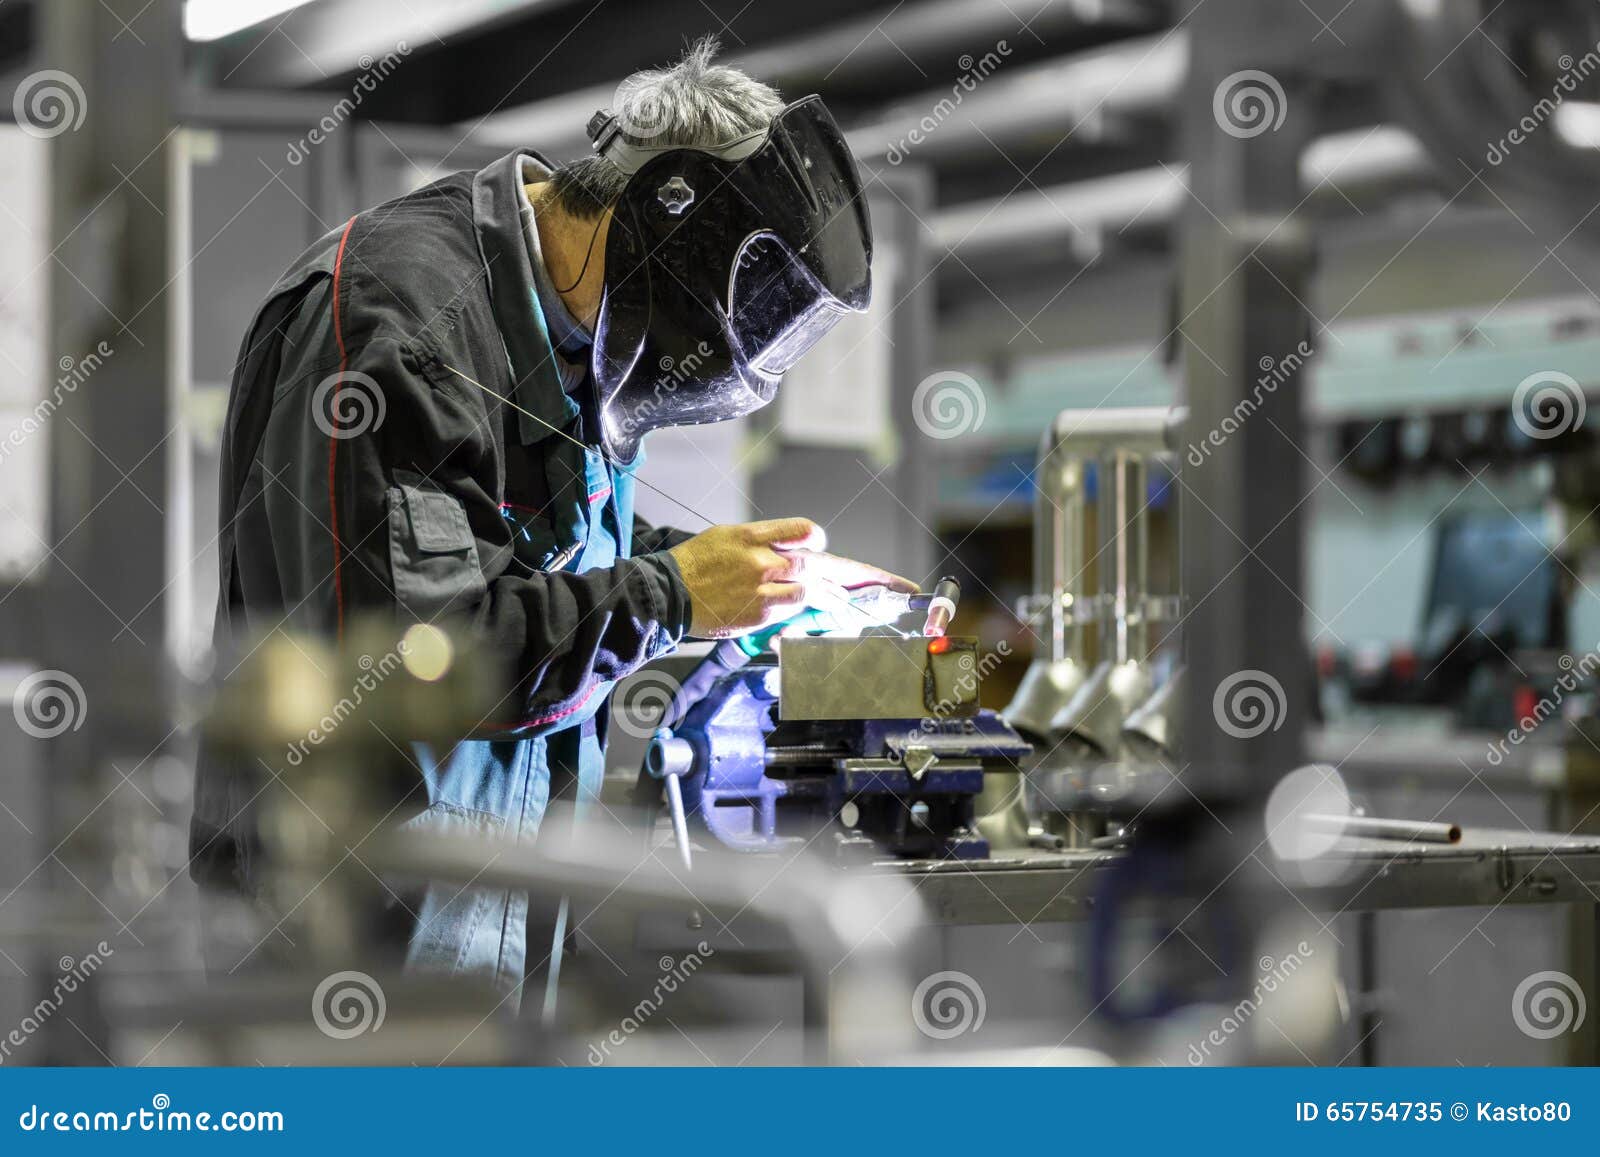 industrial worker welding in metal factory.